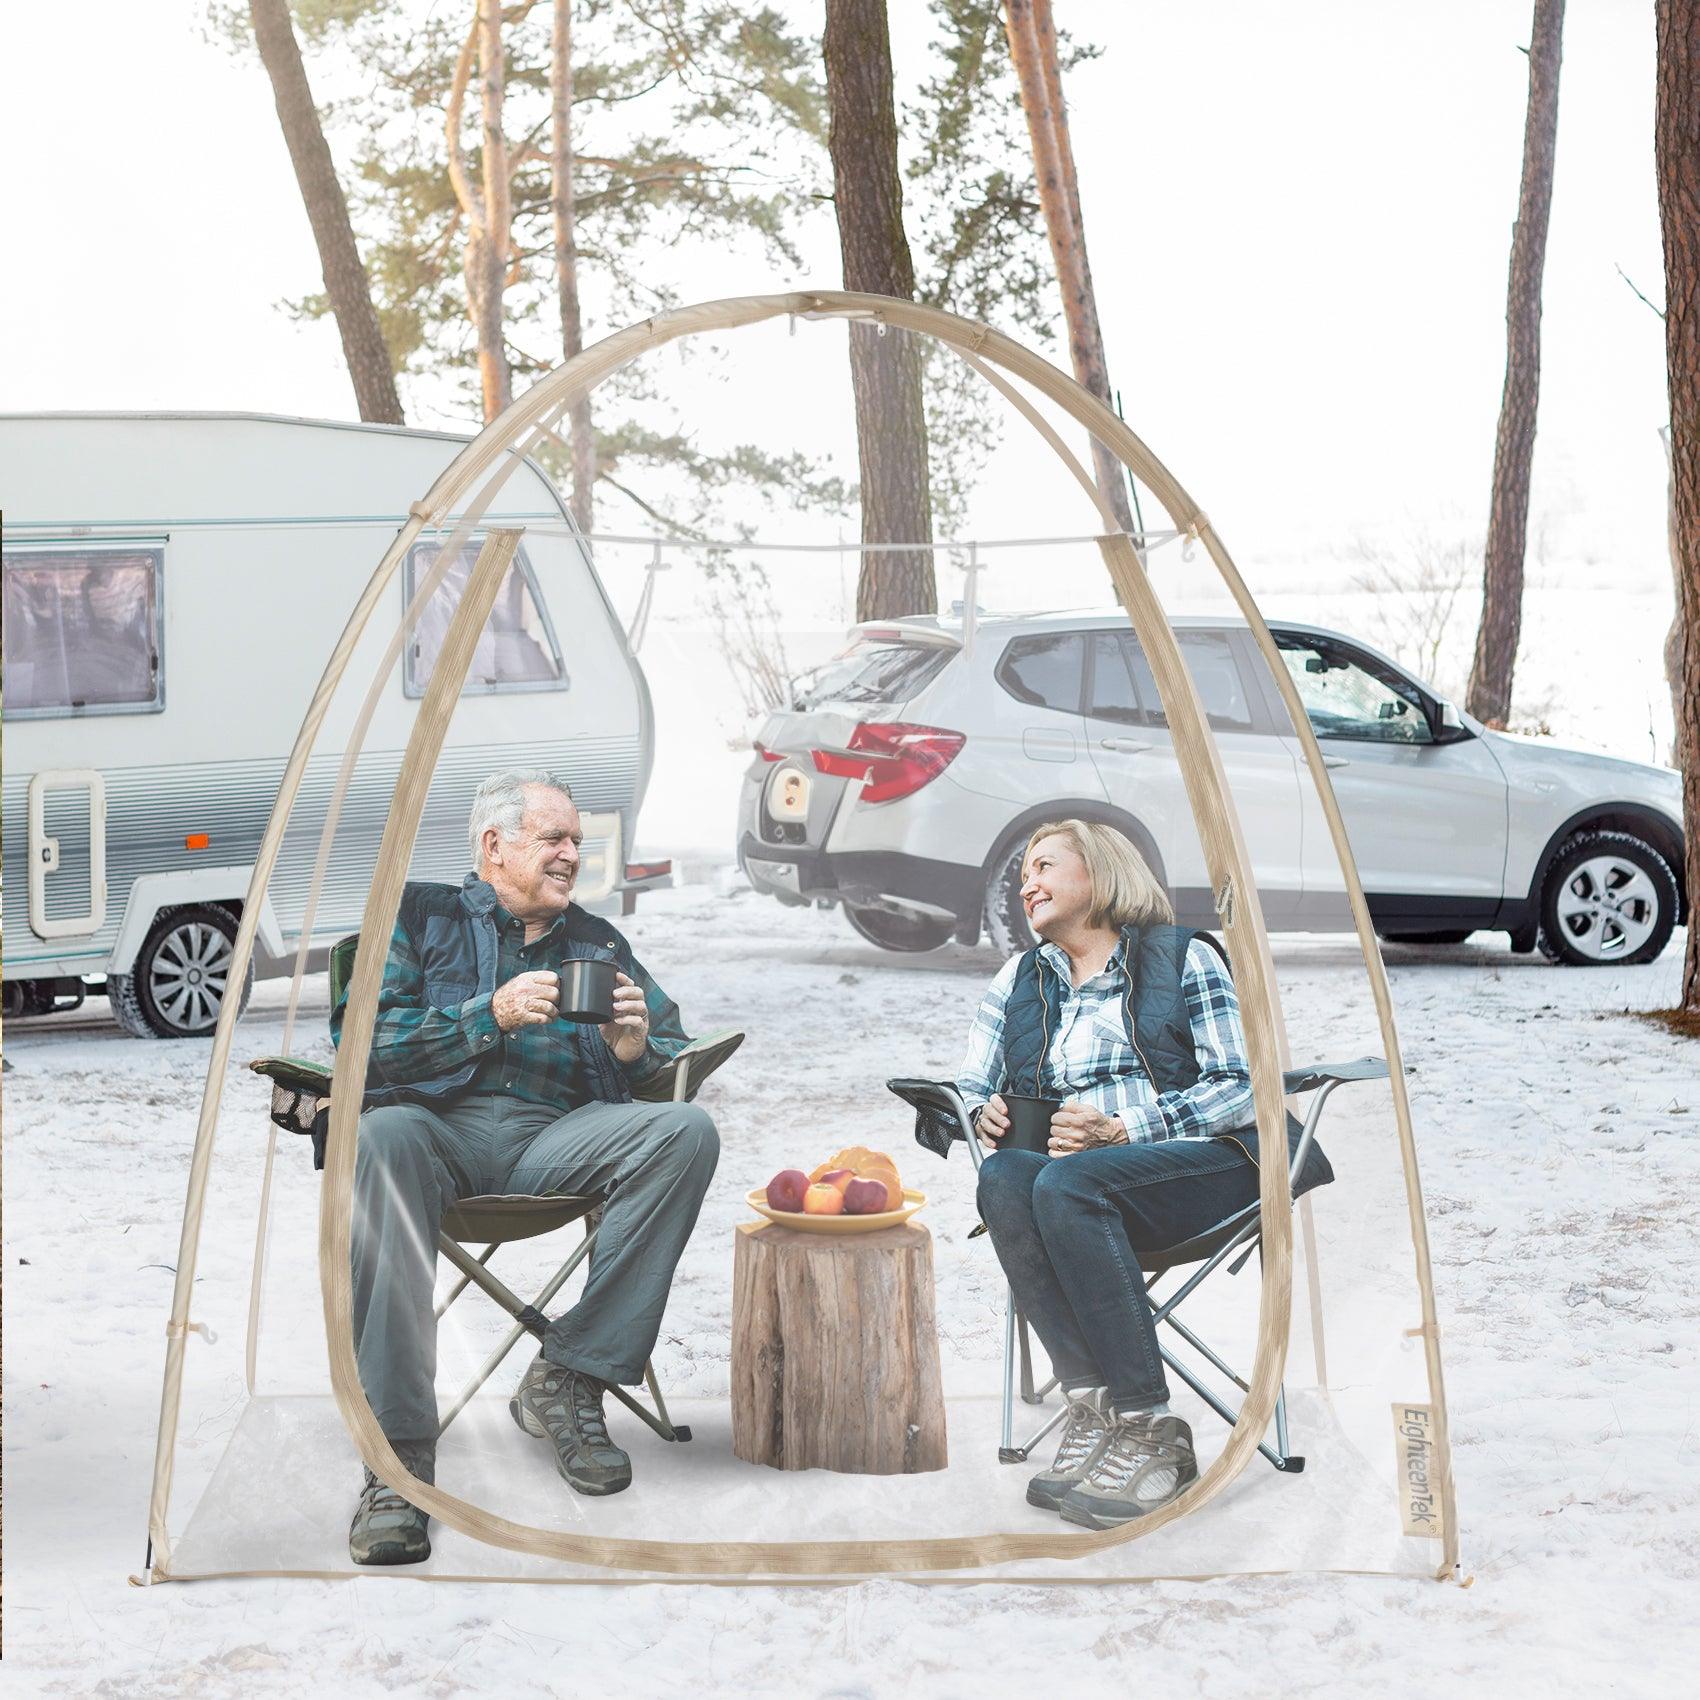 EighteenTek 7'x4' Pop Up Bubble Tent for snowy